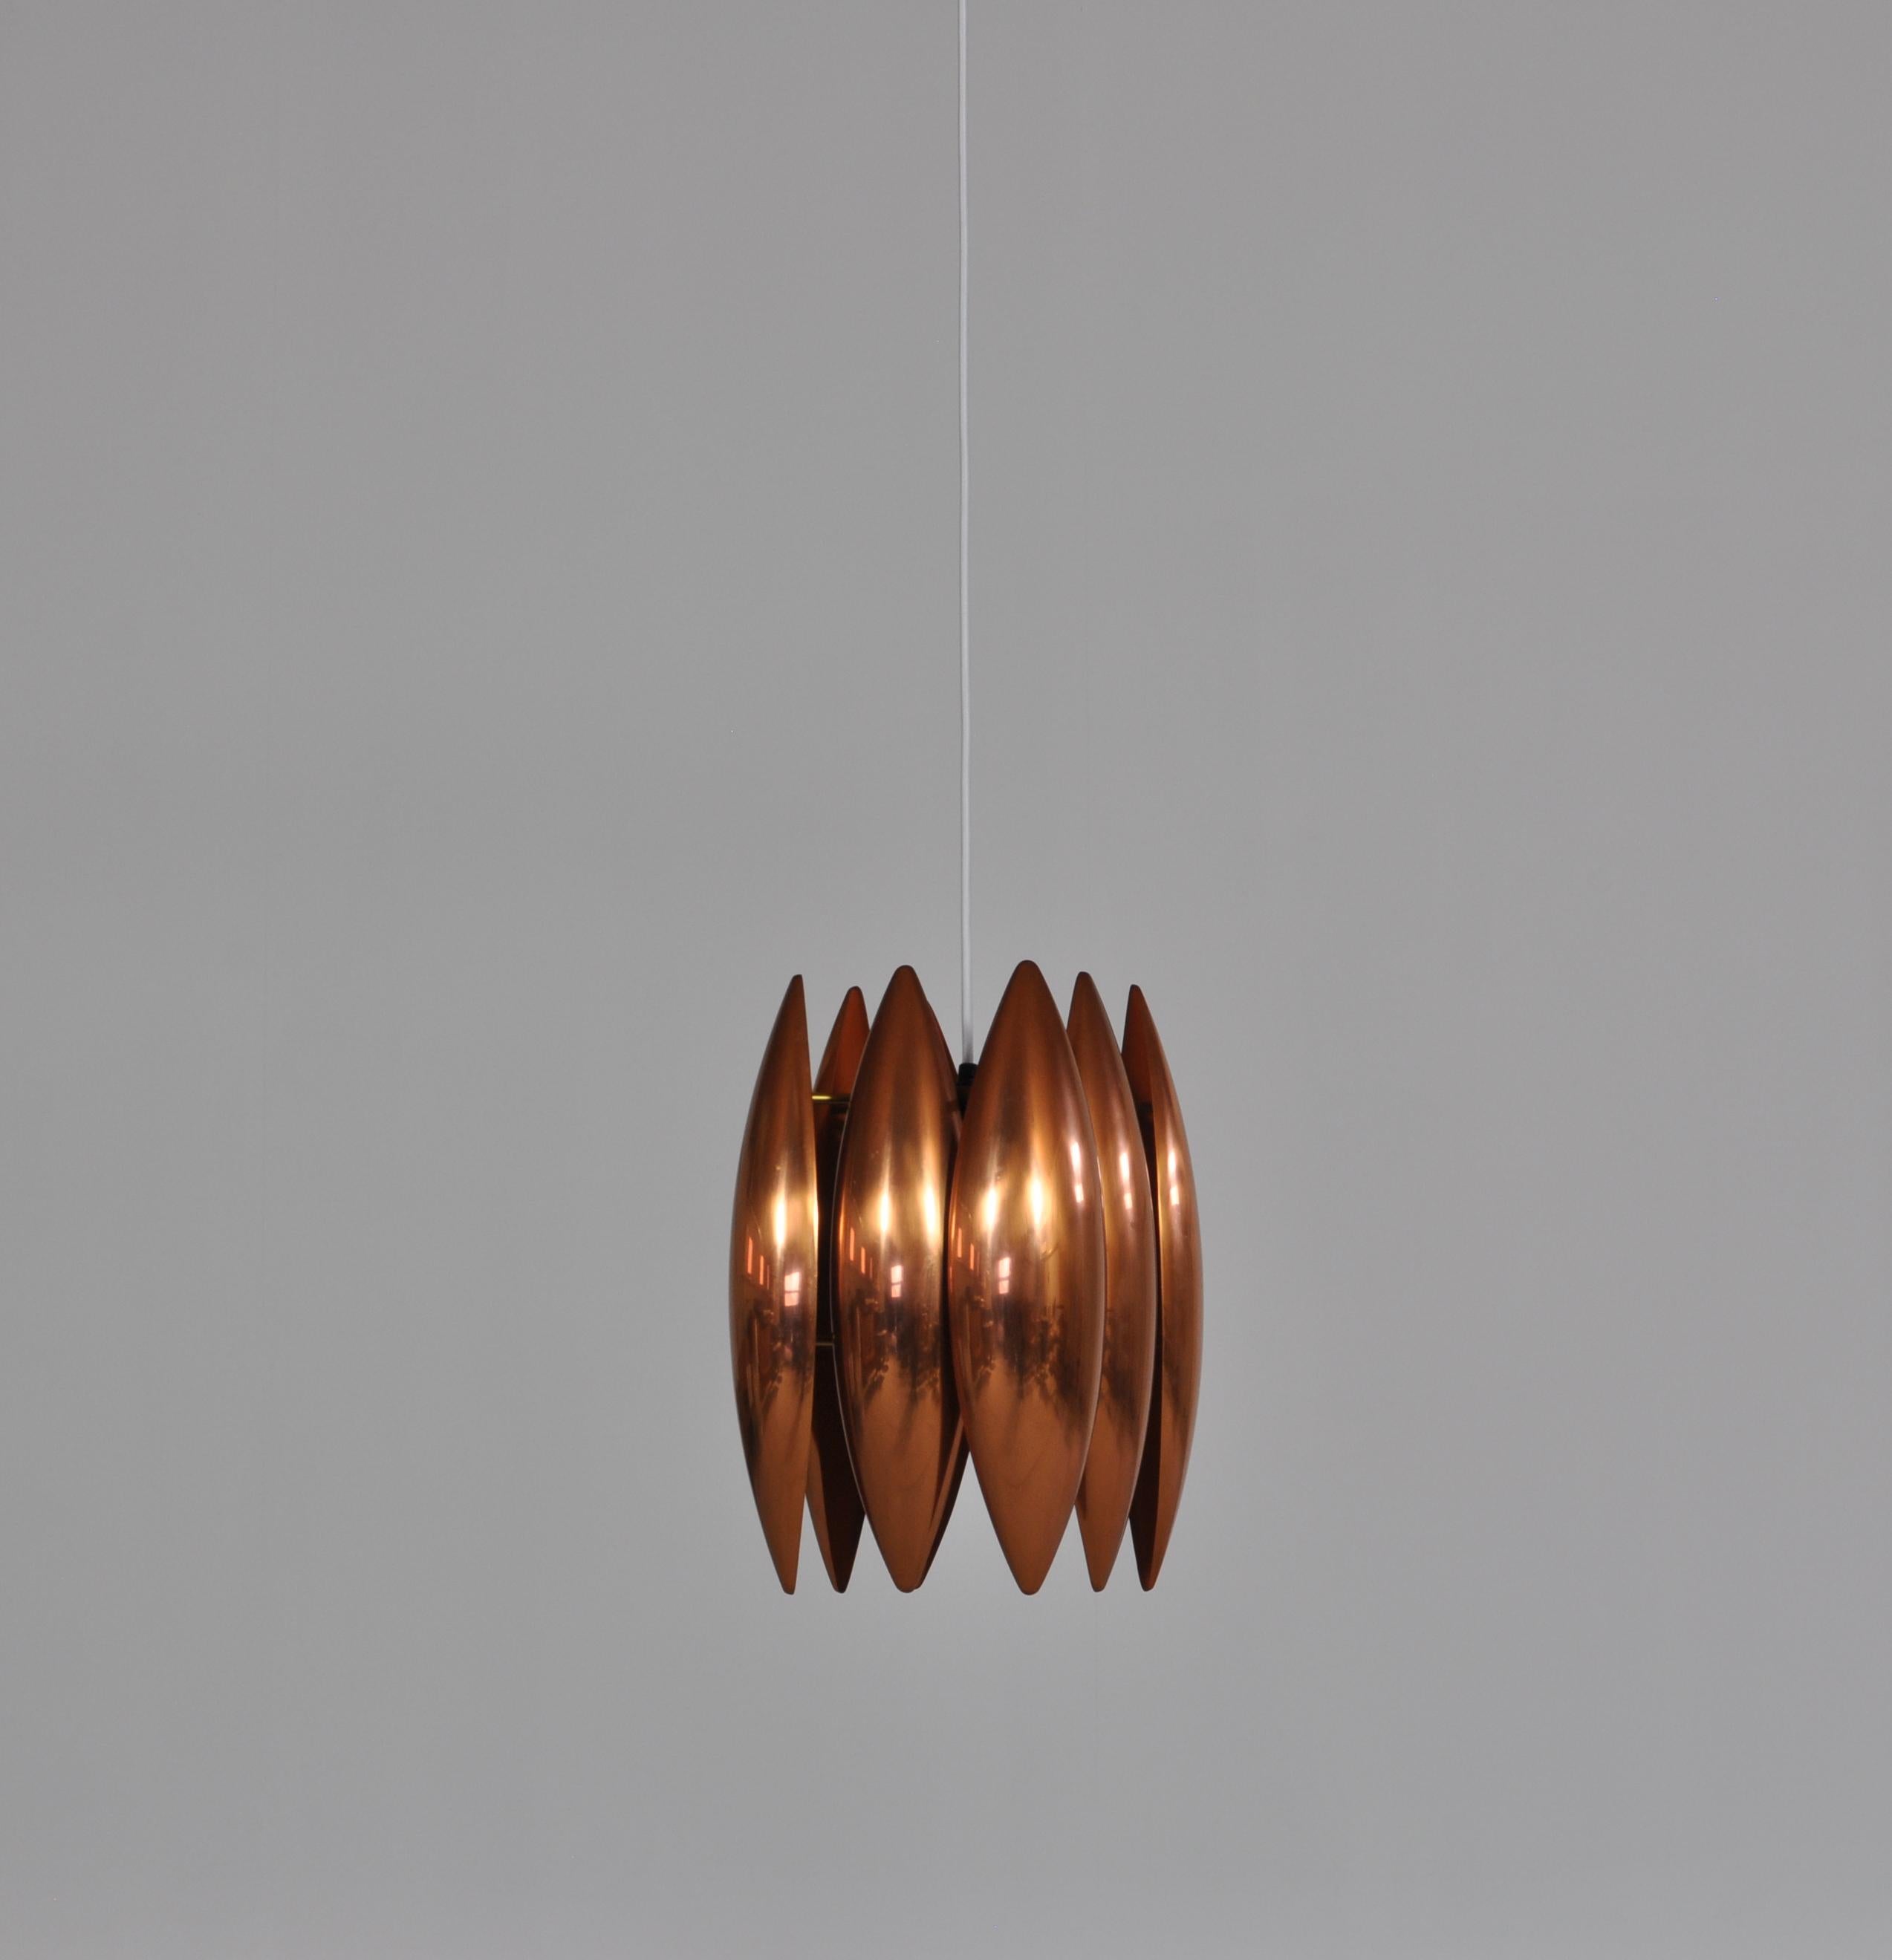 Mid-20th Century Danish Modern Copper Pendant by Jo Hammerborg for Fog & Mørup, 1960s